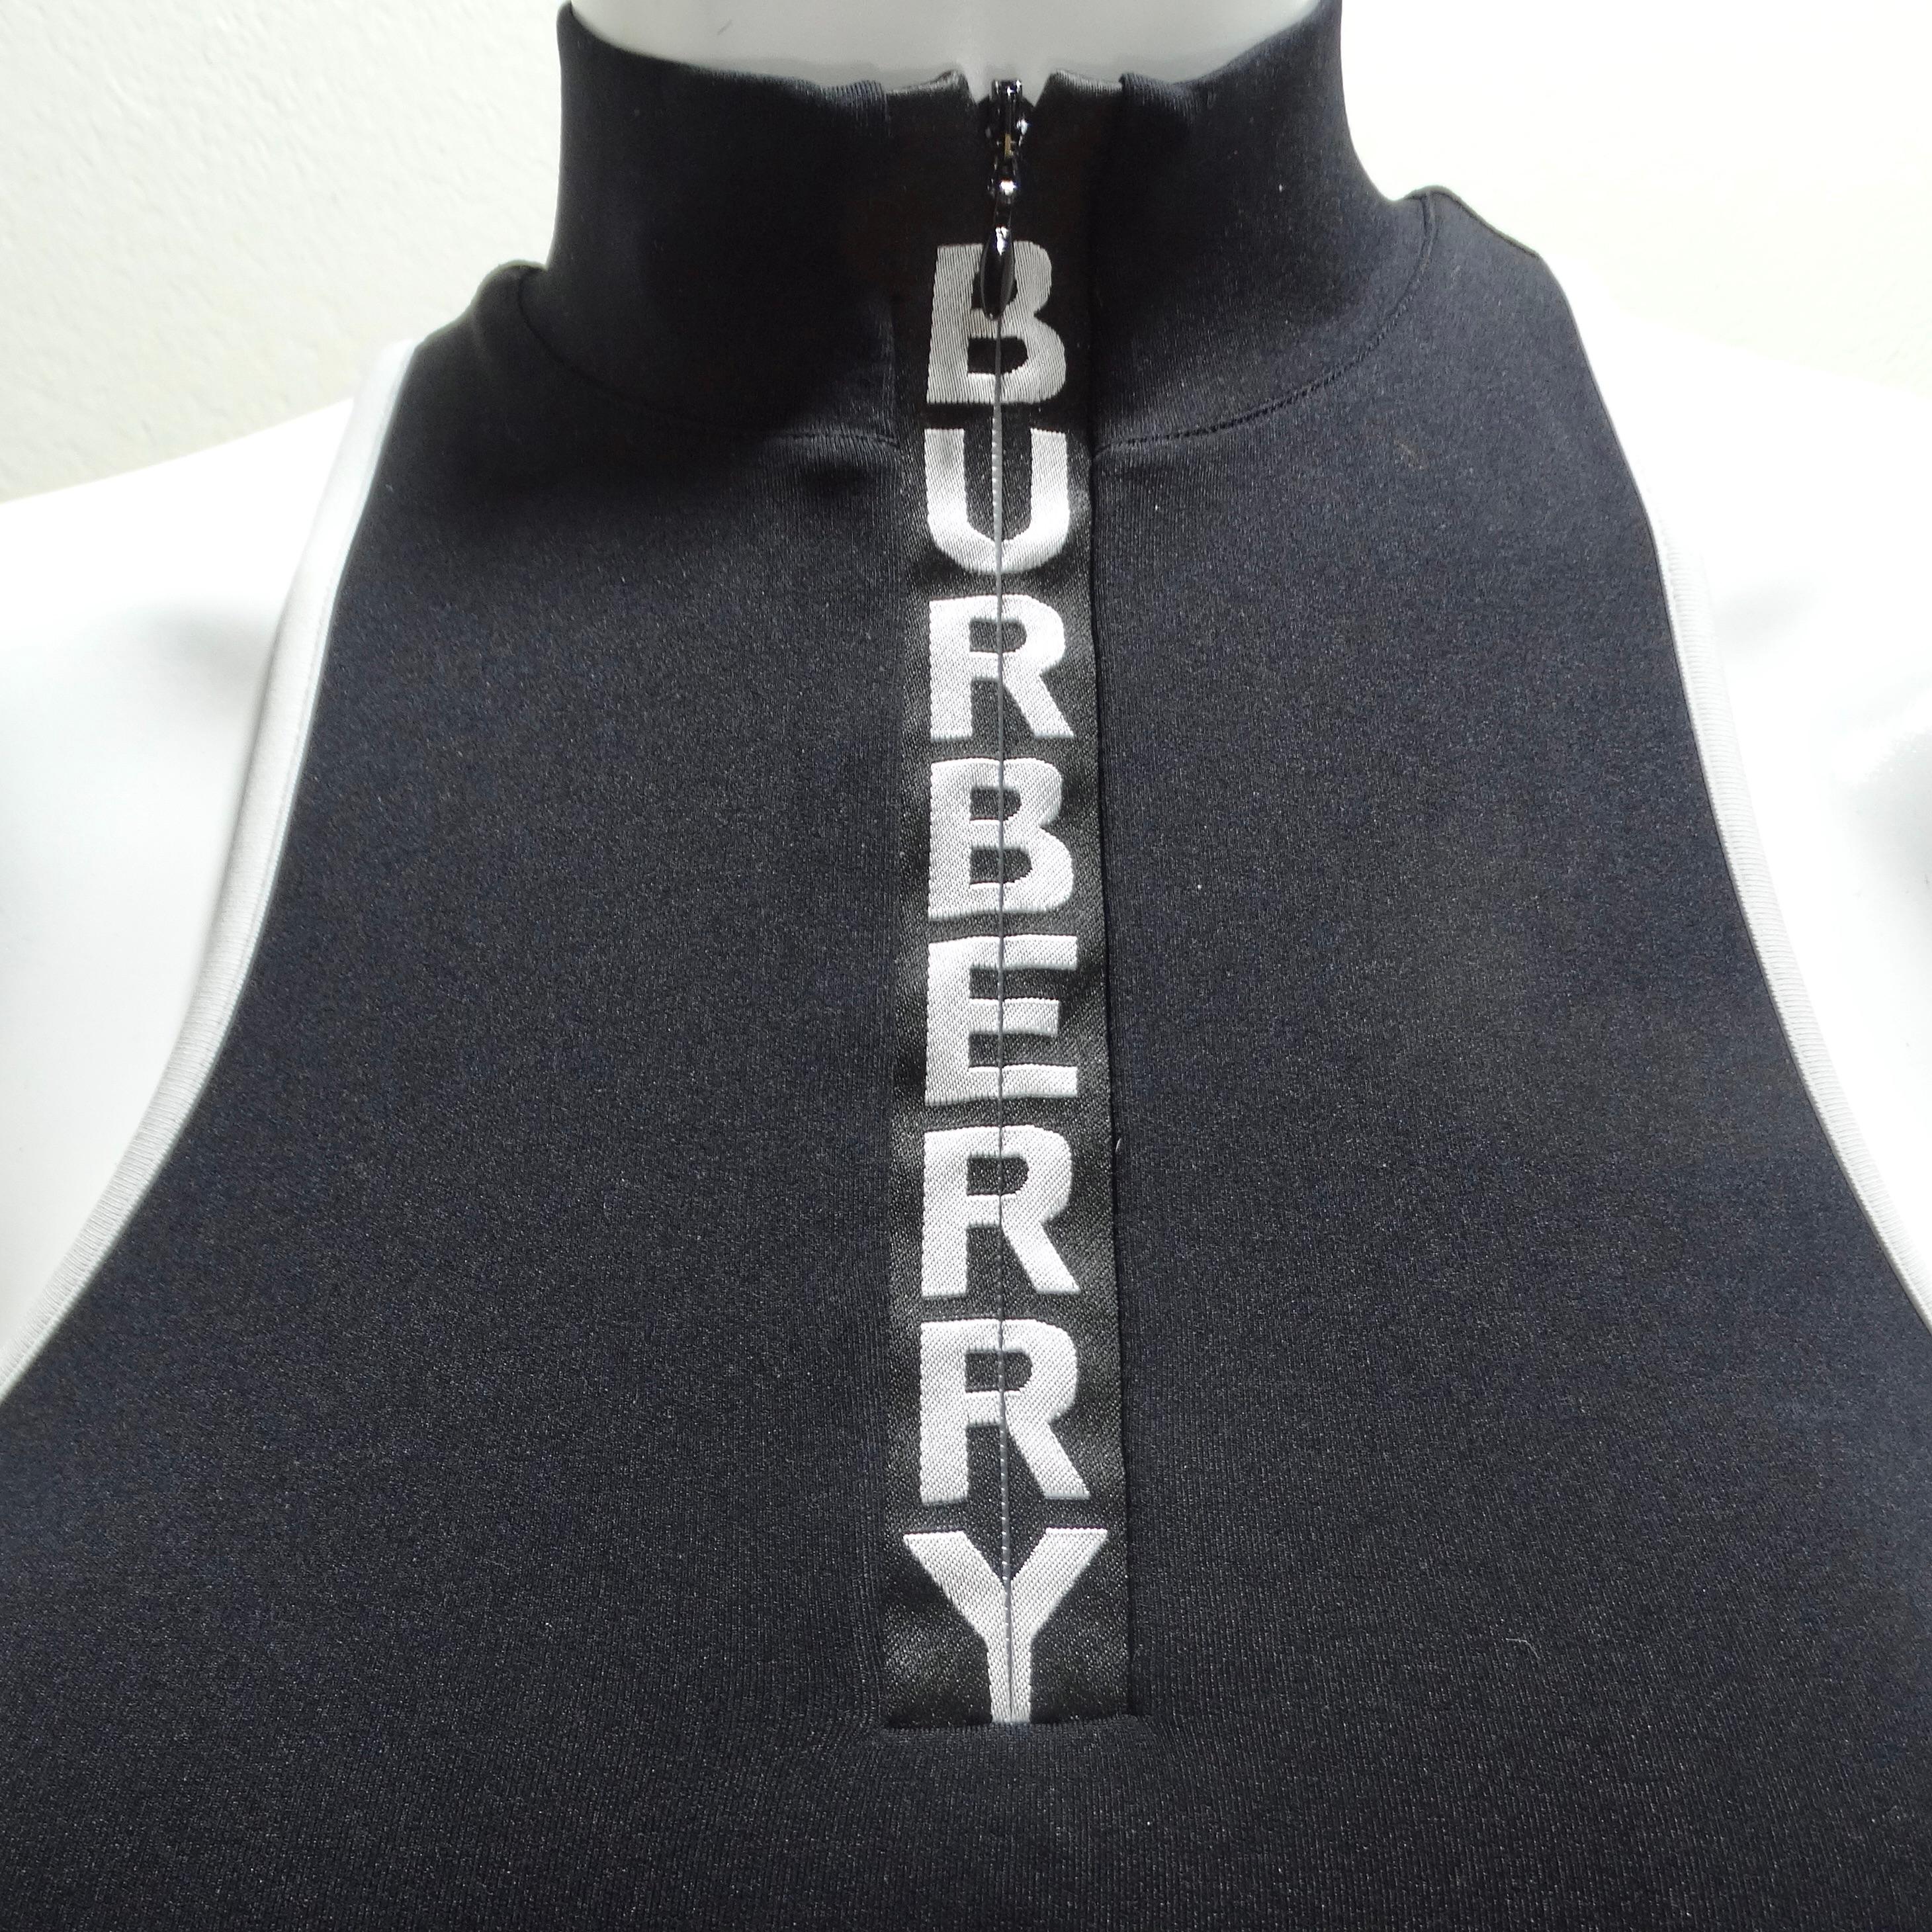 Voici le soutien-gorge de sport à logo noir de Burberry, un complément élégant et polyvalent à votre collection de vêtements de sport. Ce haut d'entraînement cropped sans manches est conçu pour élever votre routine d'exercice avec style et